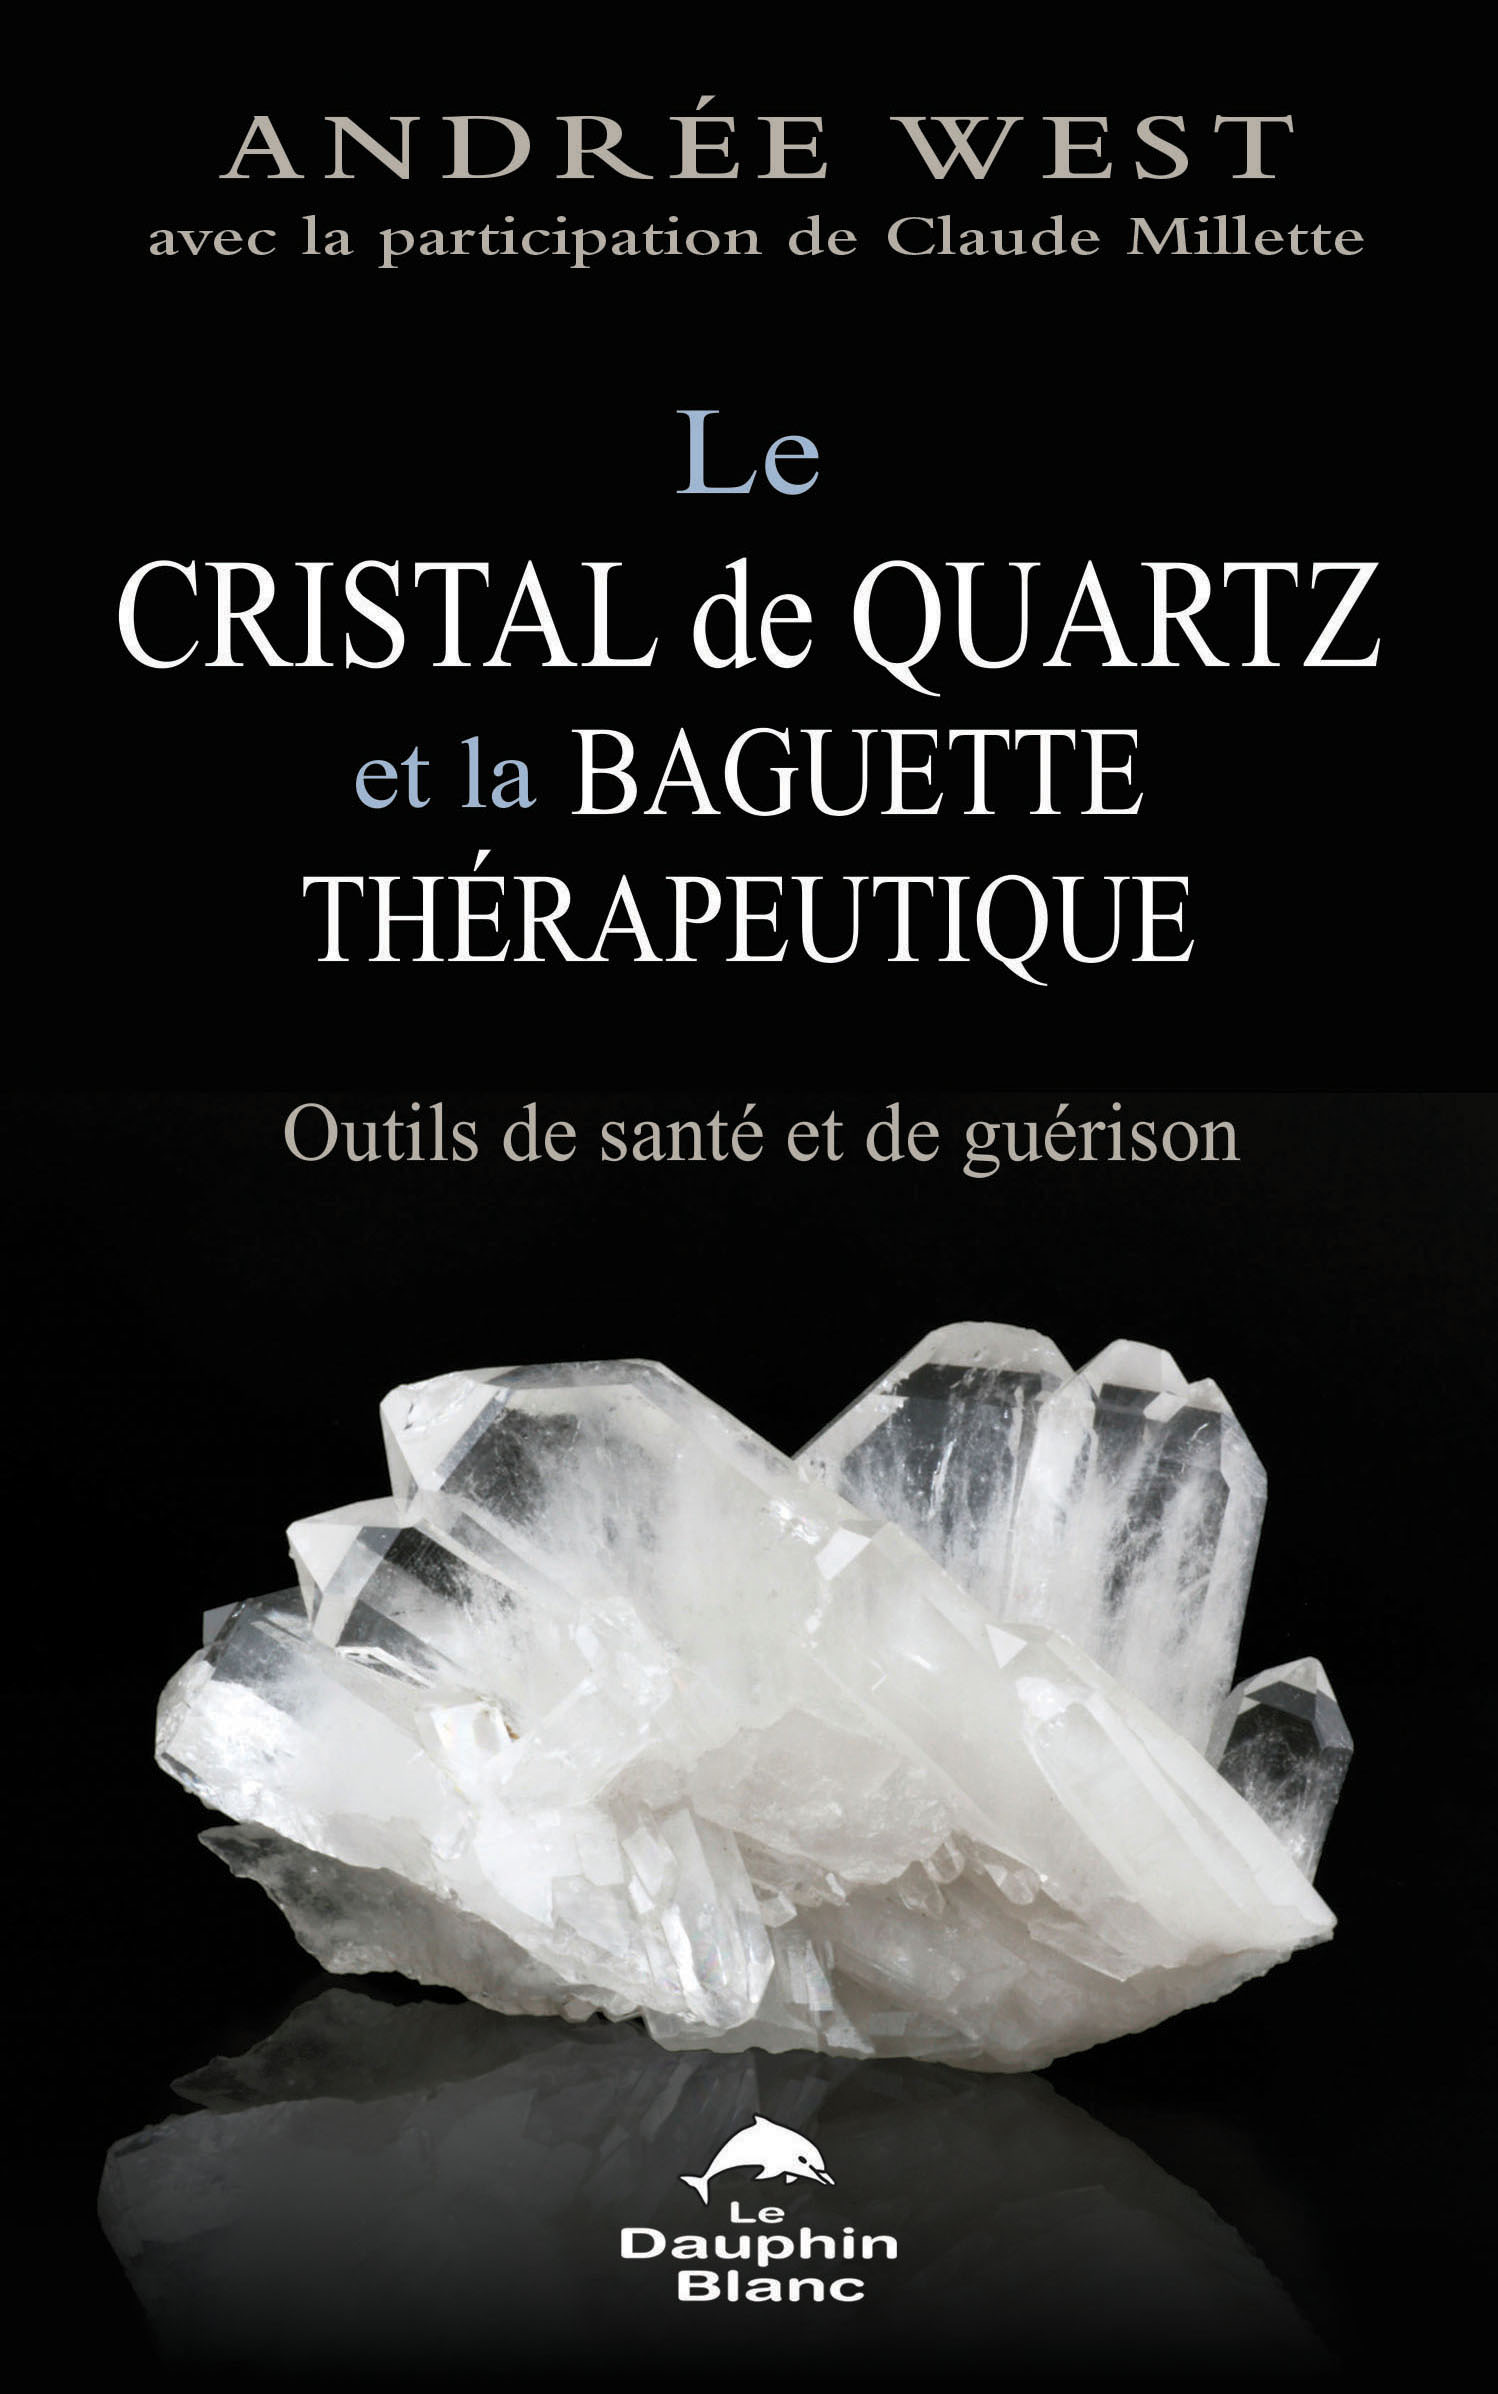 Le cristal de quartz et la baguette thérapeutique – Le Dauphin Blanc